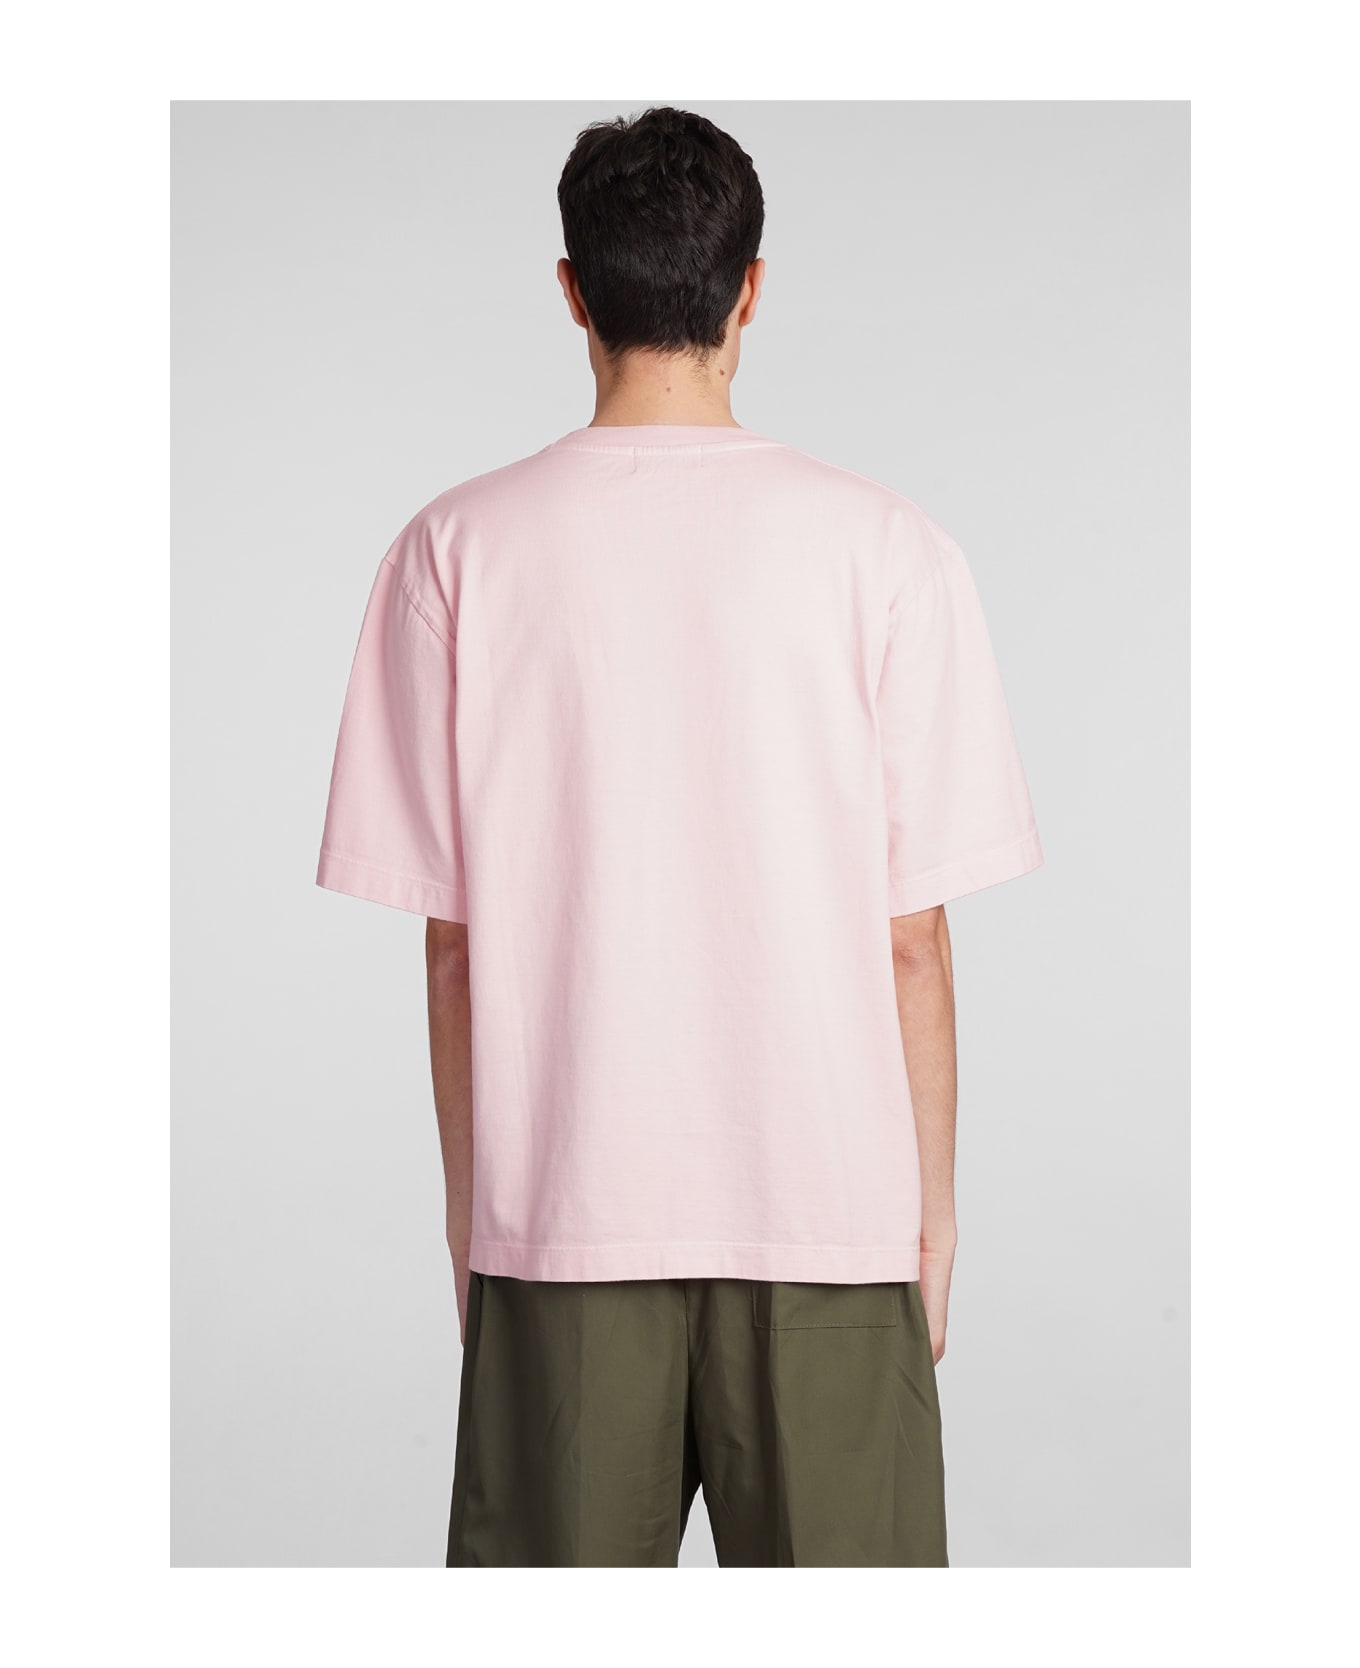 Laneus T-shirt In Rose-pink Cotton - rose-pink